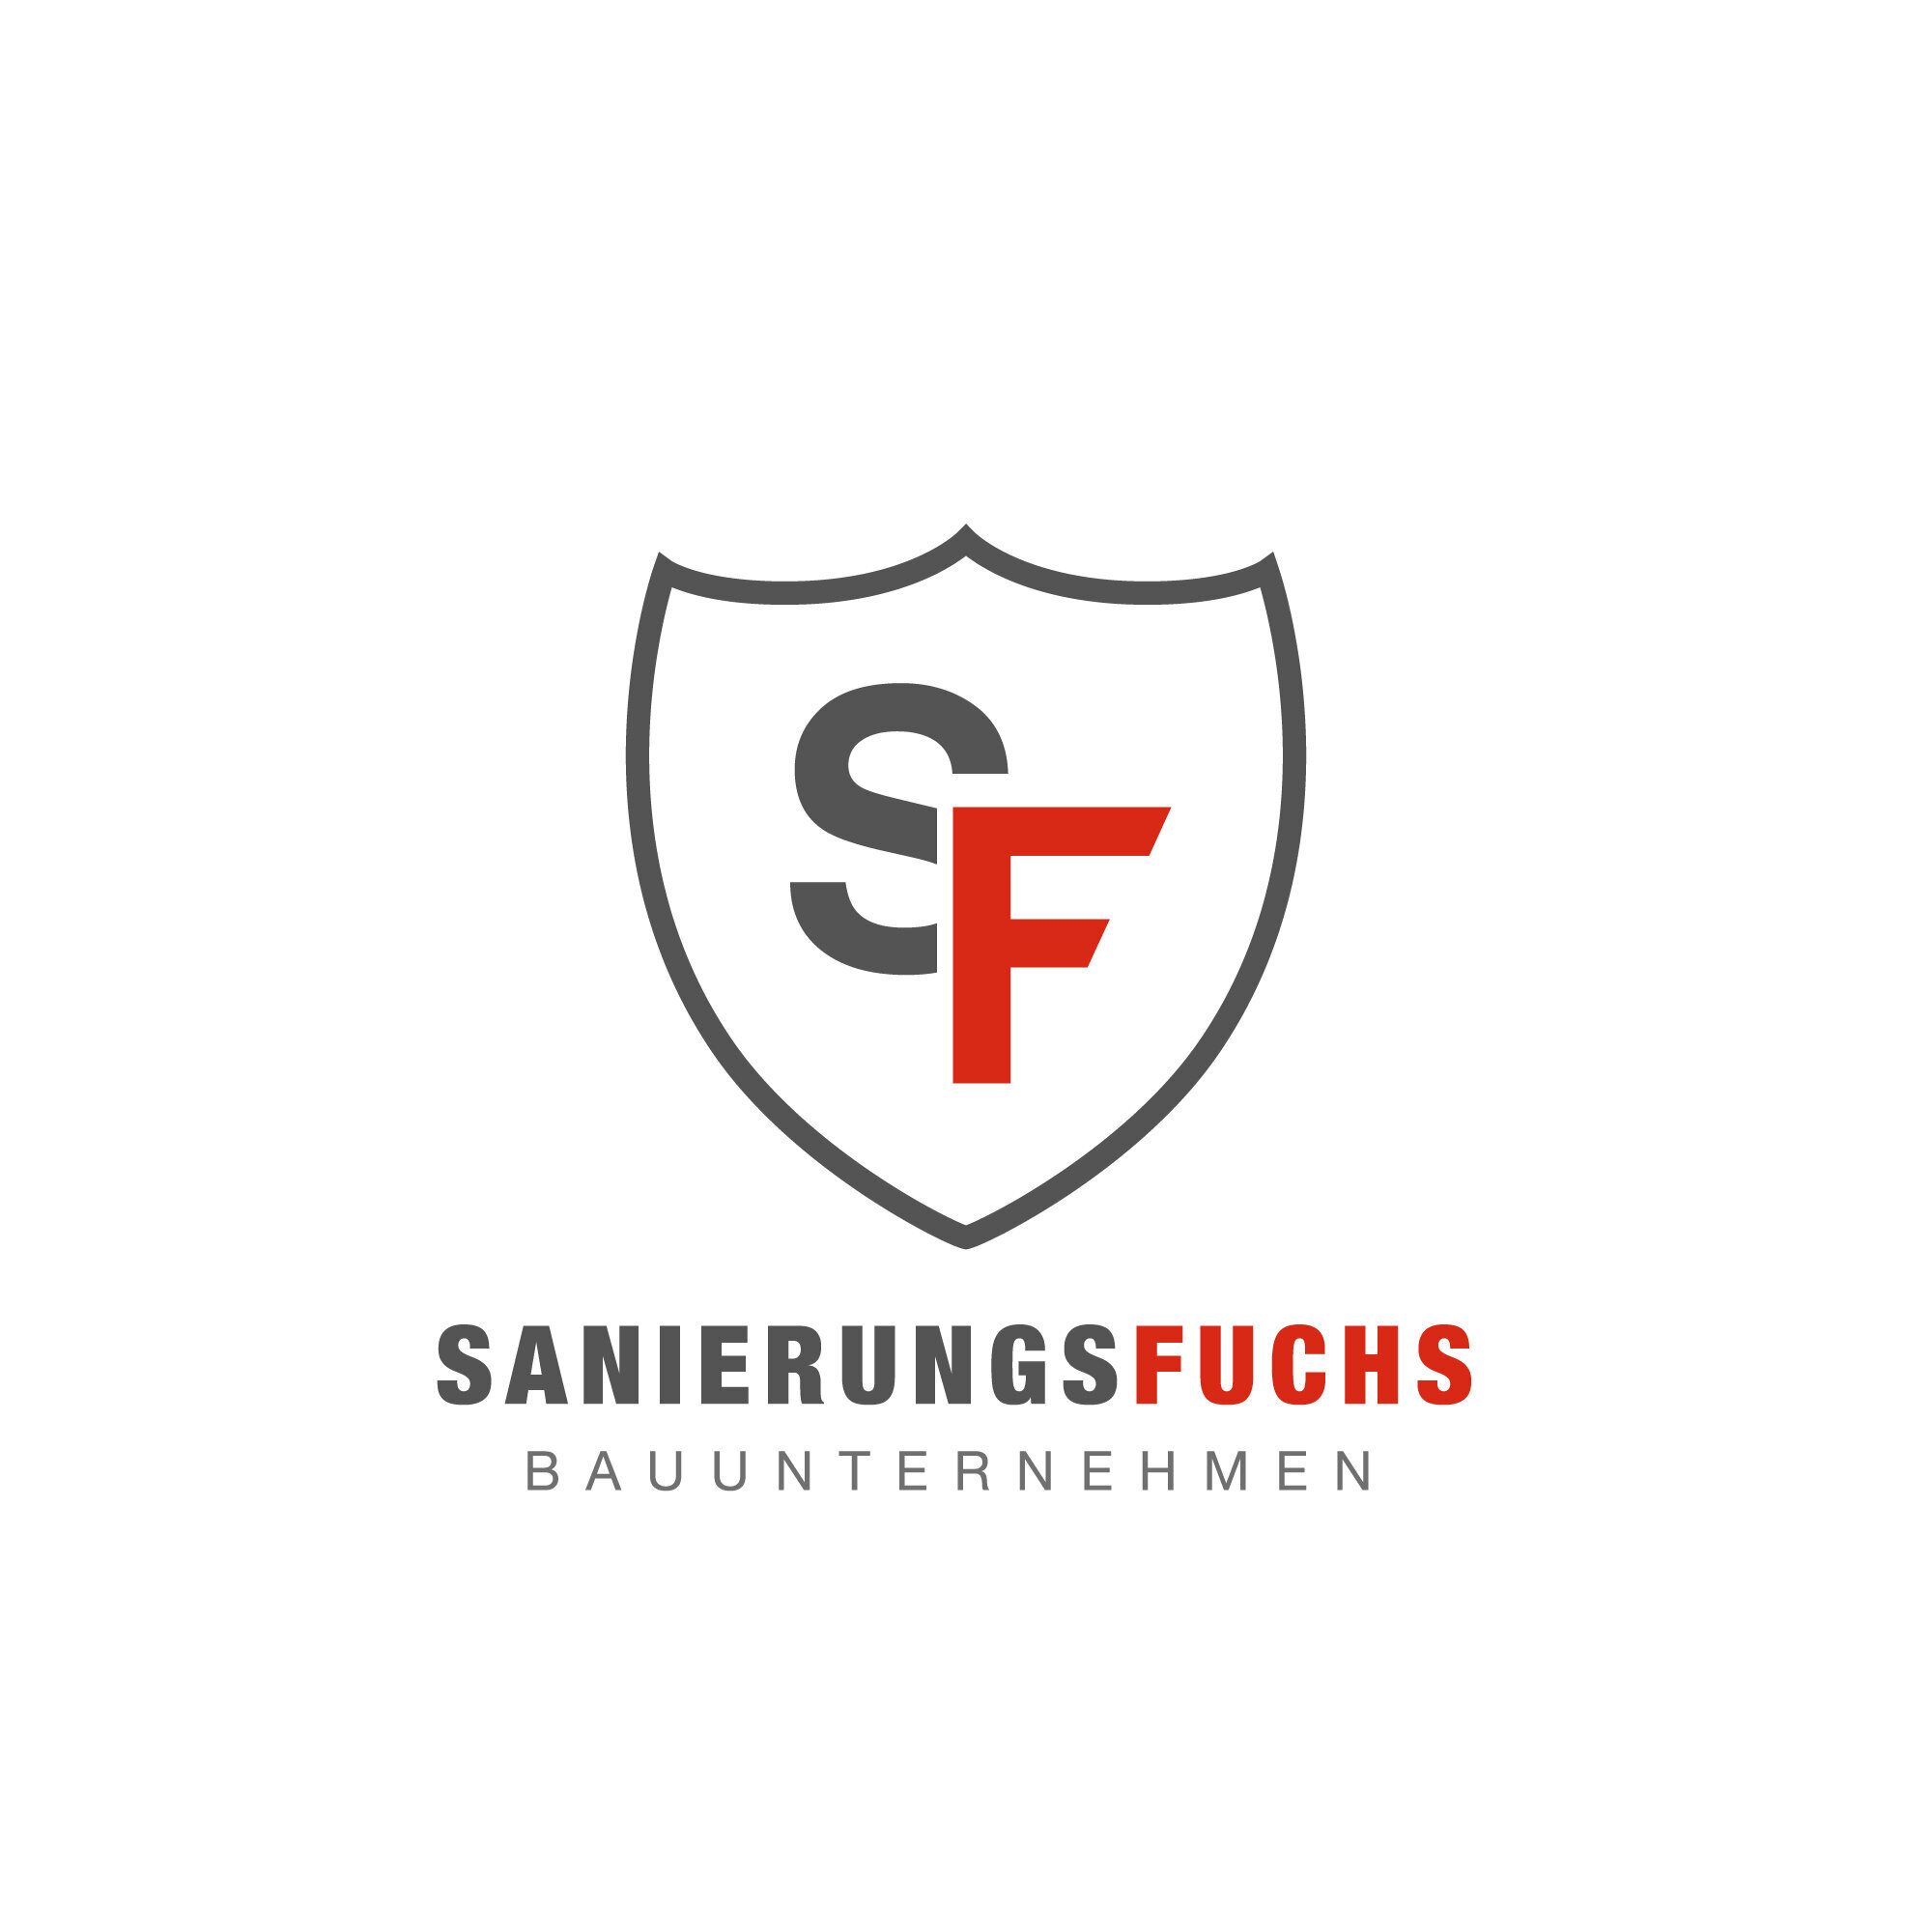 Bild der Sanierungsfuchs GmbH